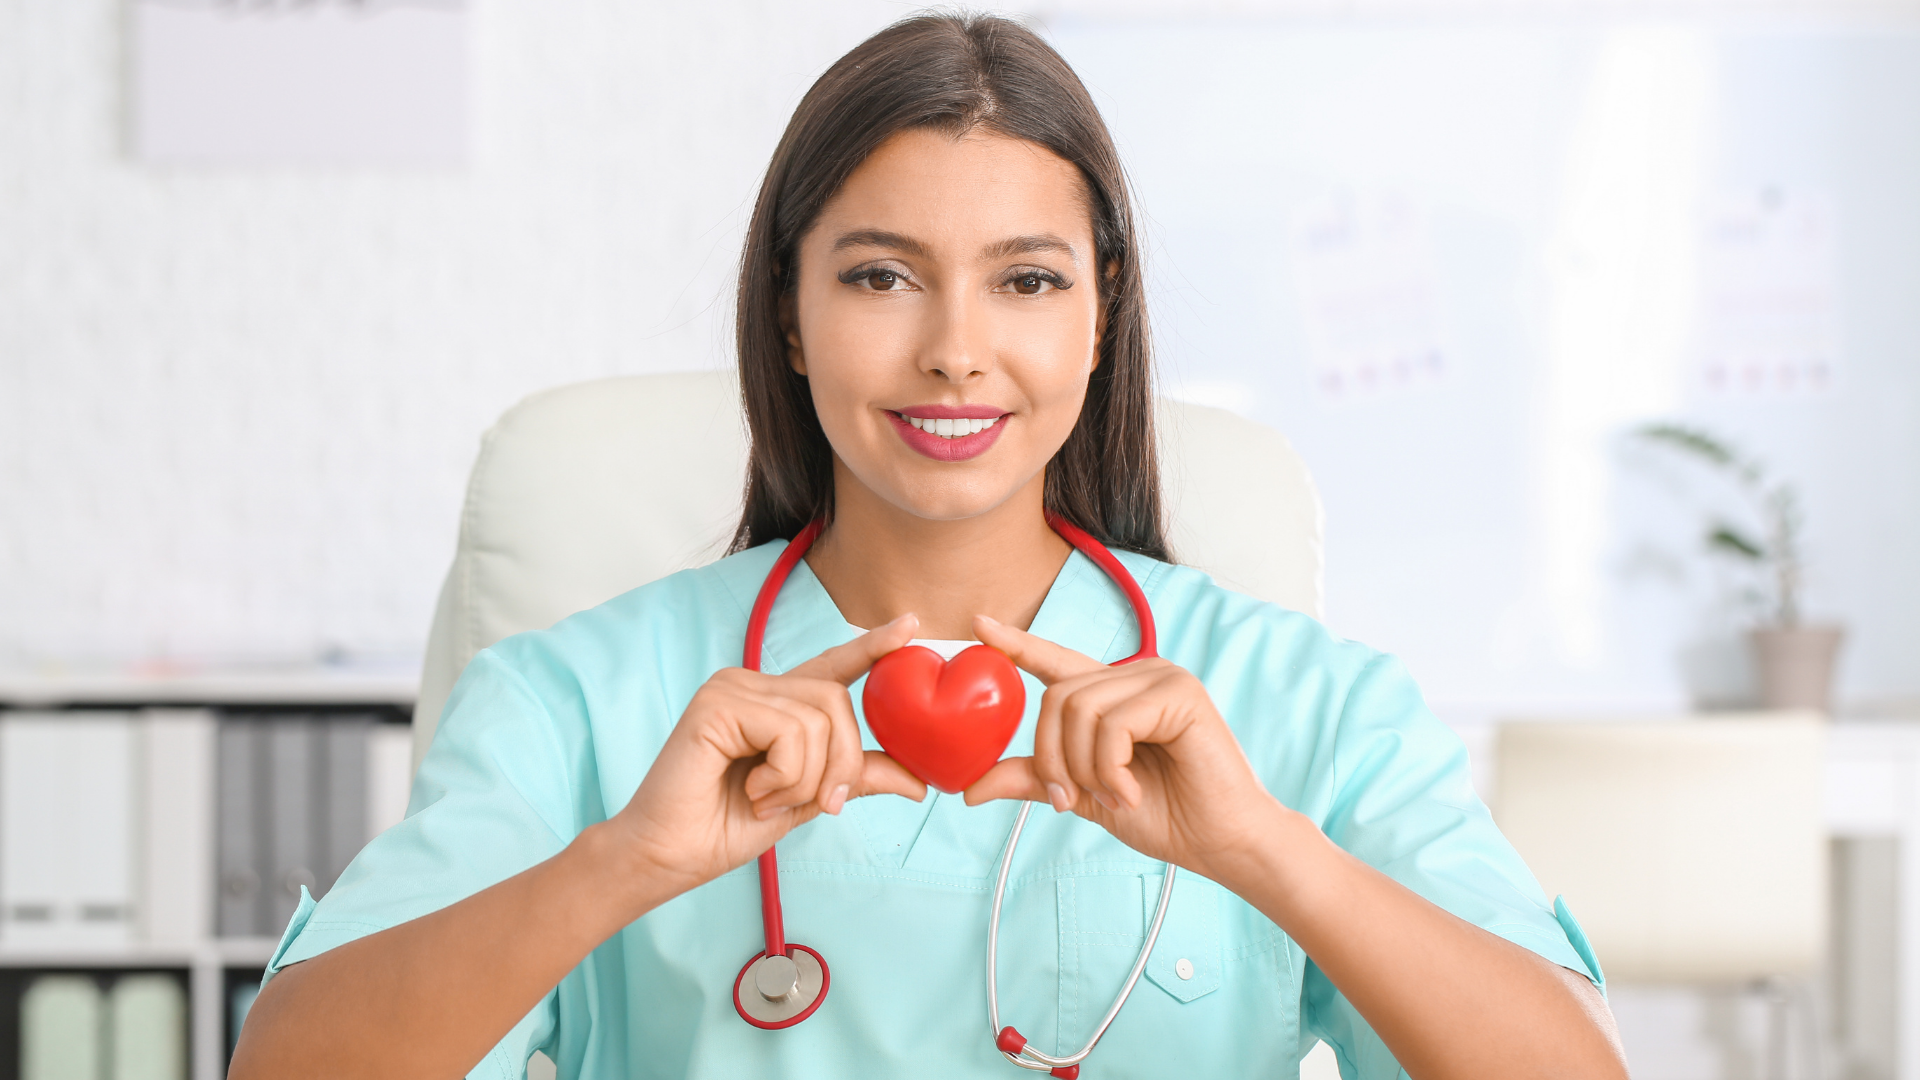 Foto de capa do artigo "Cardiologista: o especialista que cuida da saúde do coração"